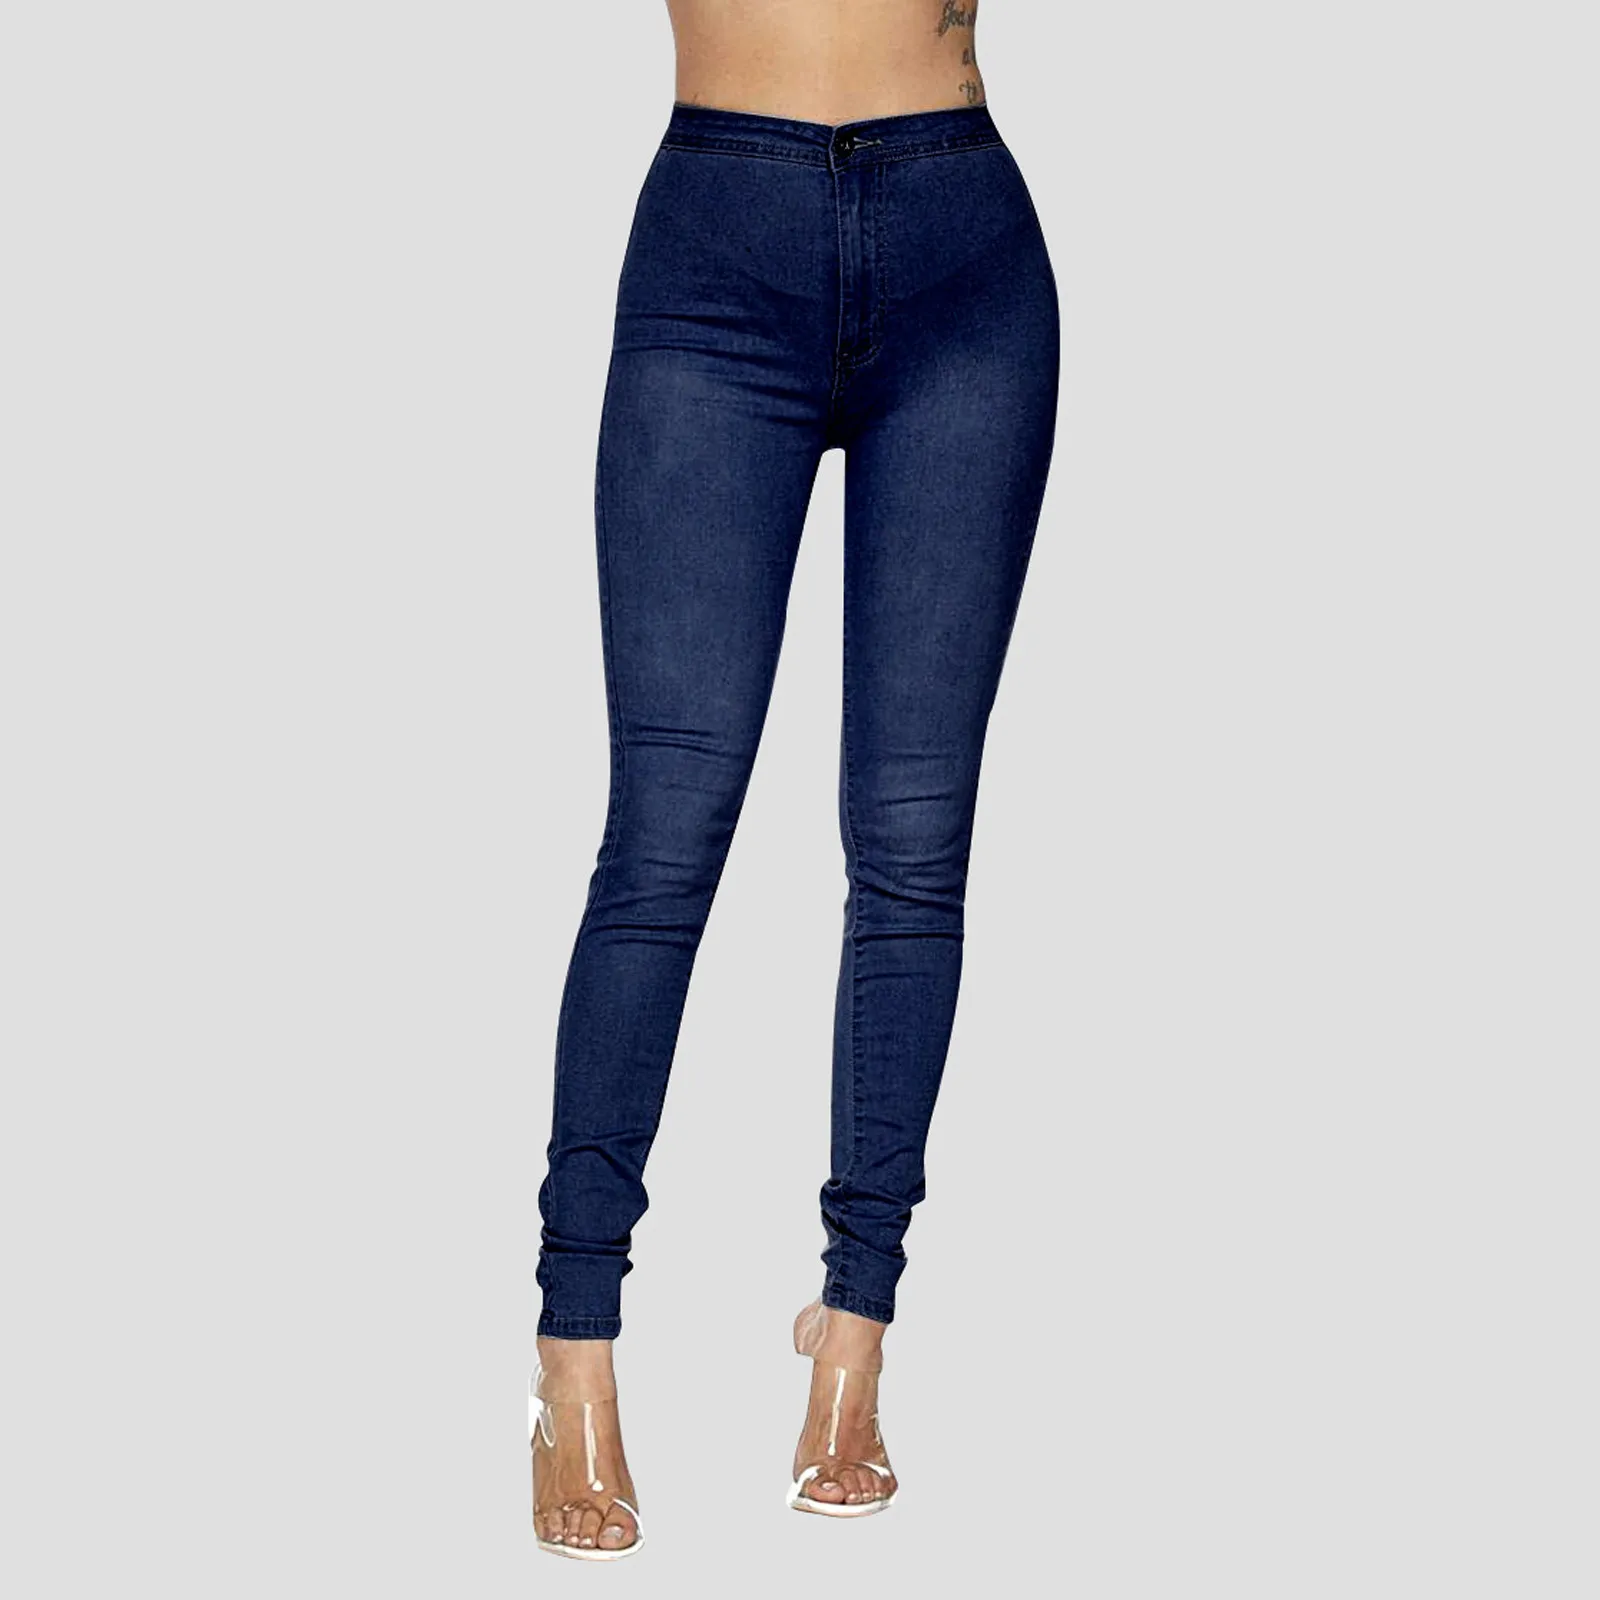 

Джинсы для мамы и дочки, джинсы темно-синего цвета женские высокие эластичные размера плюс с высокой талией, джинсы потертые джинсовые брюк...